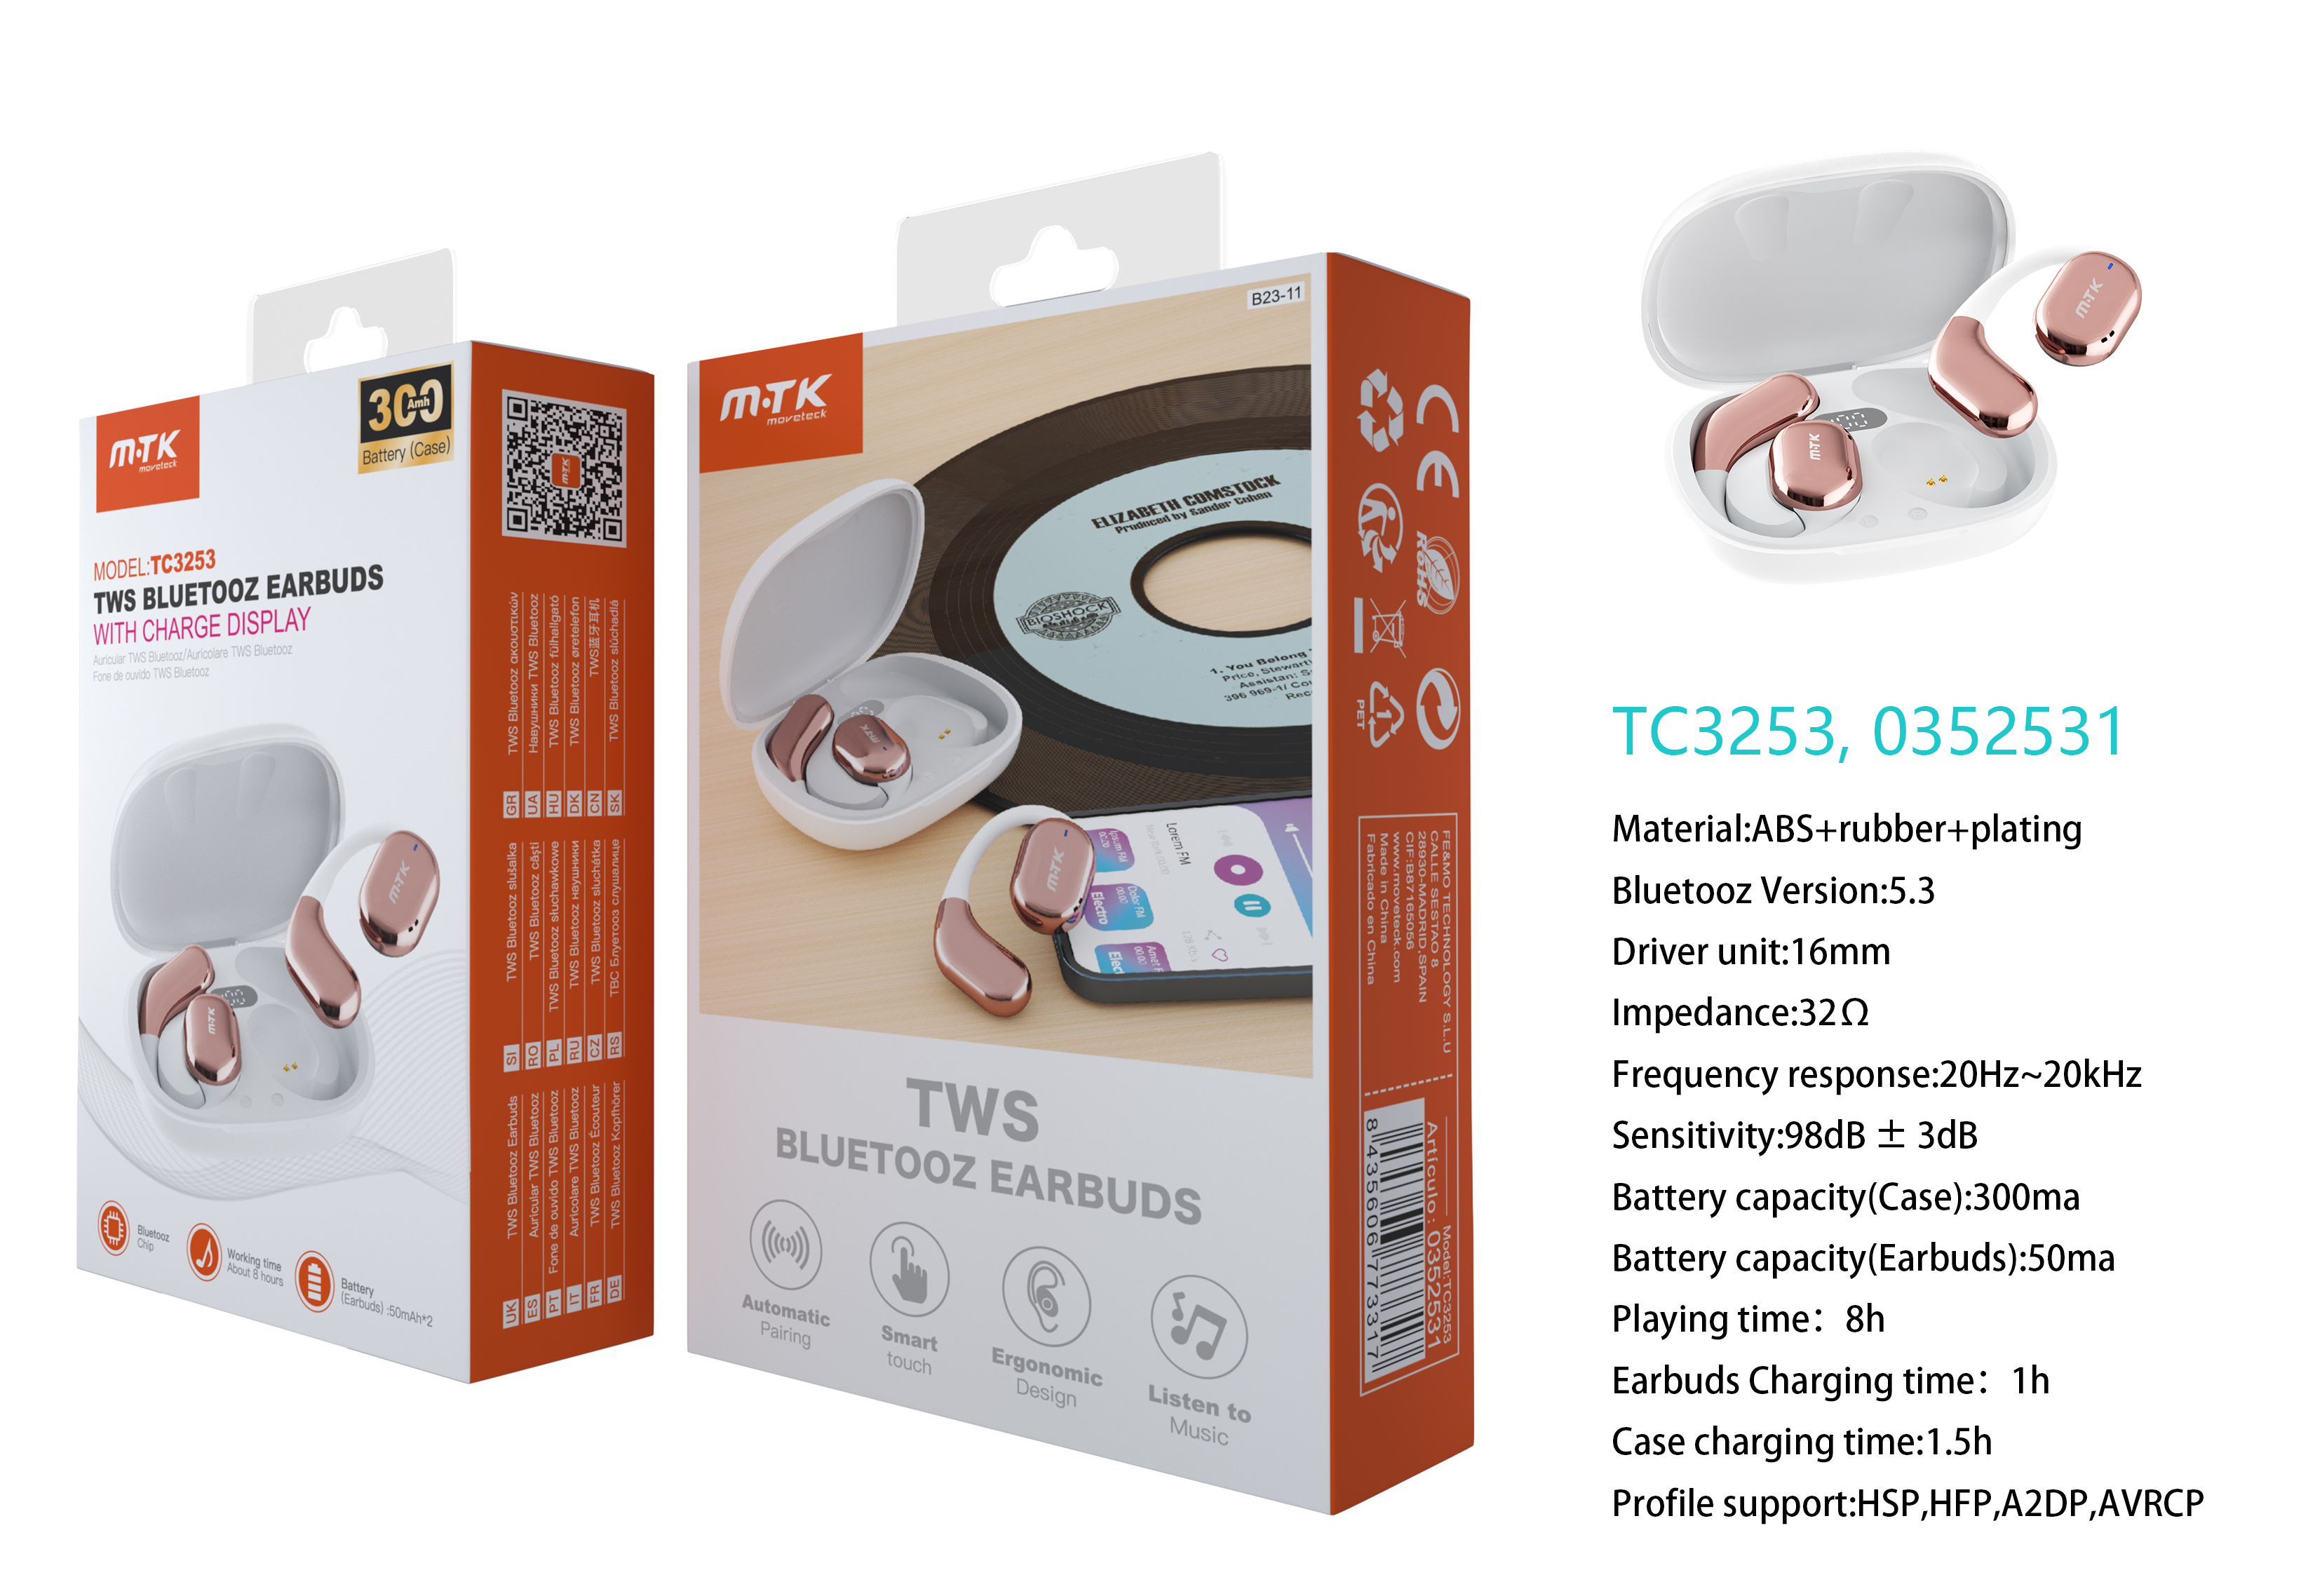 TC3253 BL+RS Auriculares Boxer TWS BTS V5.3, Bateria Earbuds 50mAh*2 + Estuche 300mAh, con pantalla digital, 8h de uso, Blanco+Rosa Gold